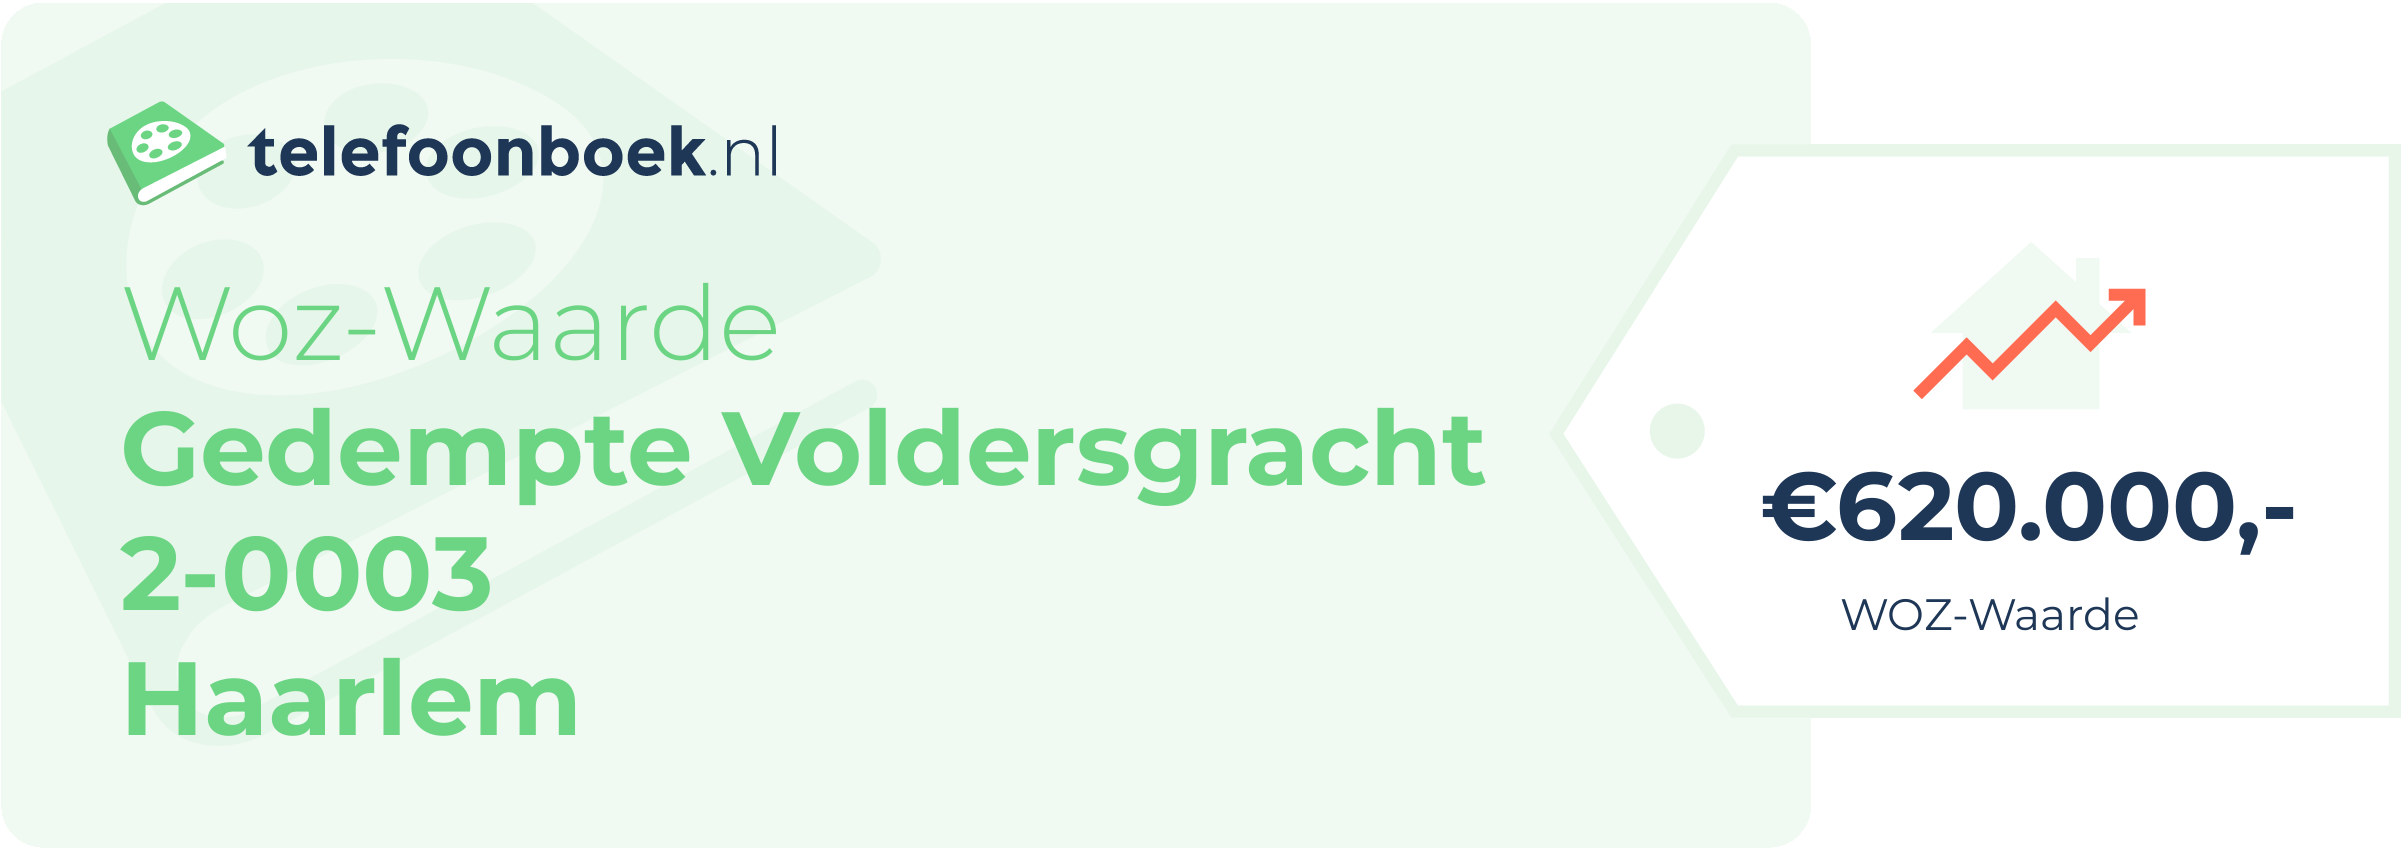 WOZ-waarde Gedempte Voldersgracht 2-0003 Haarlem